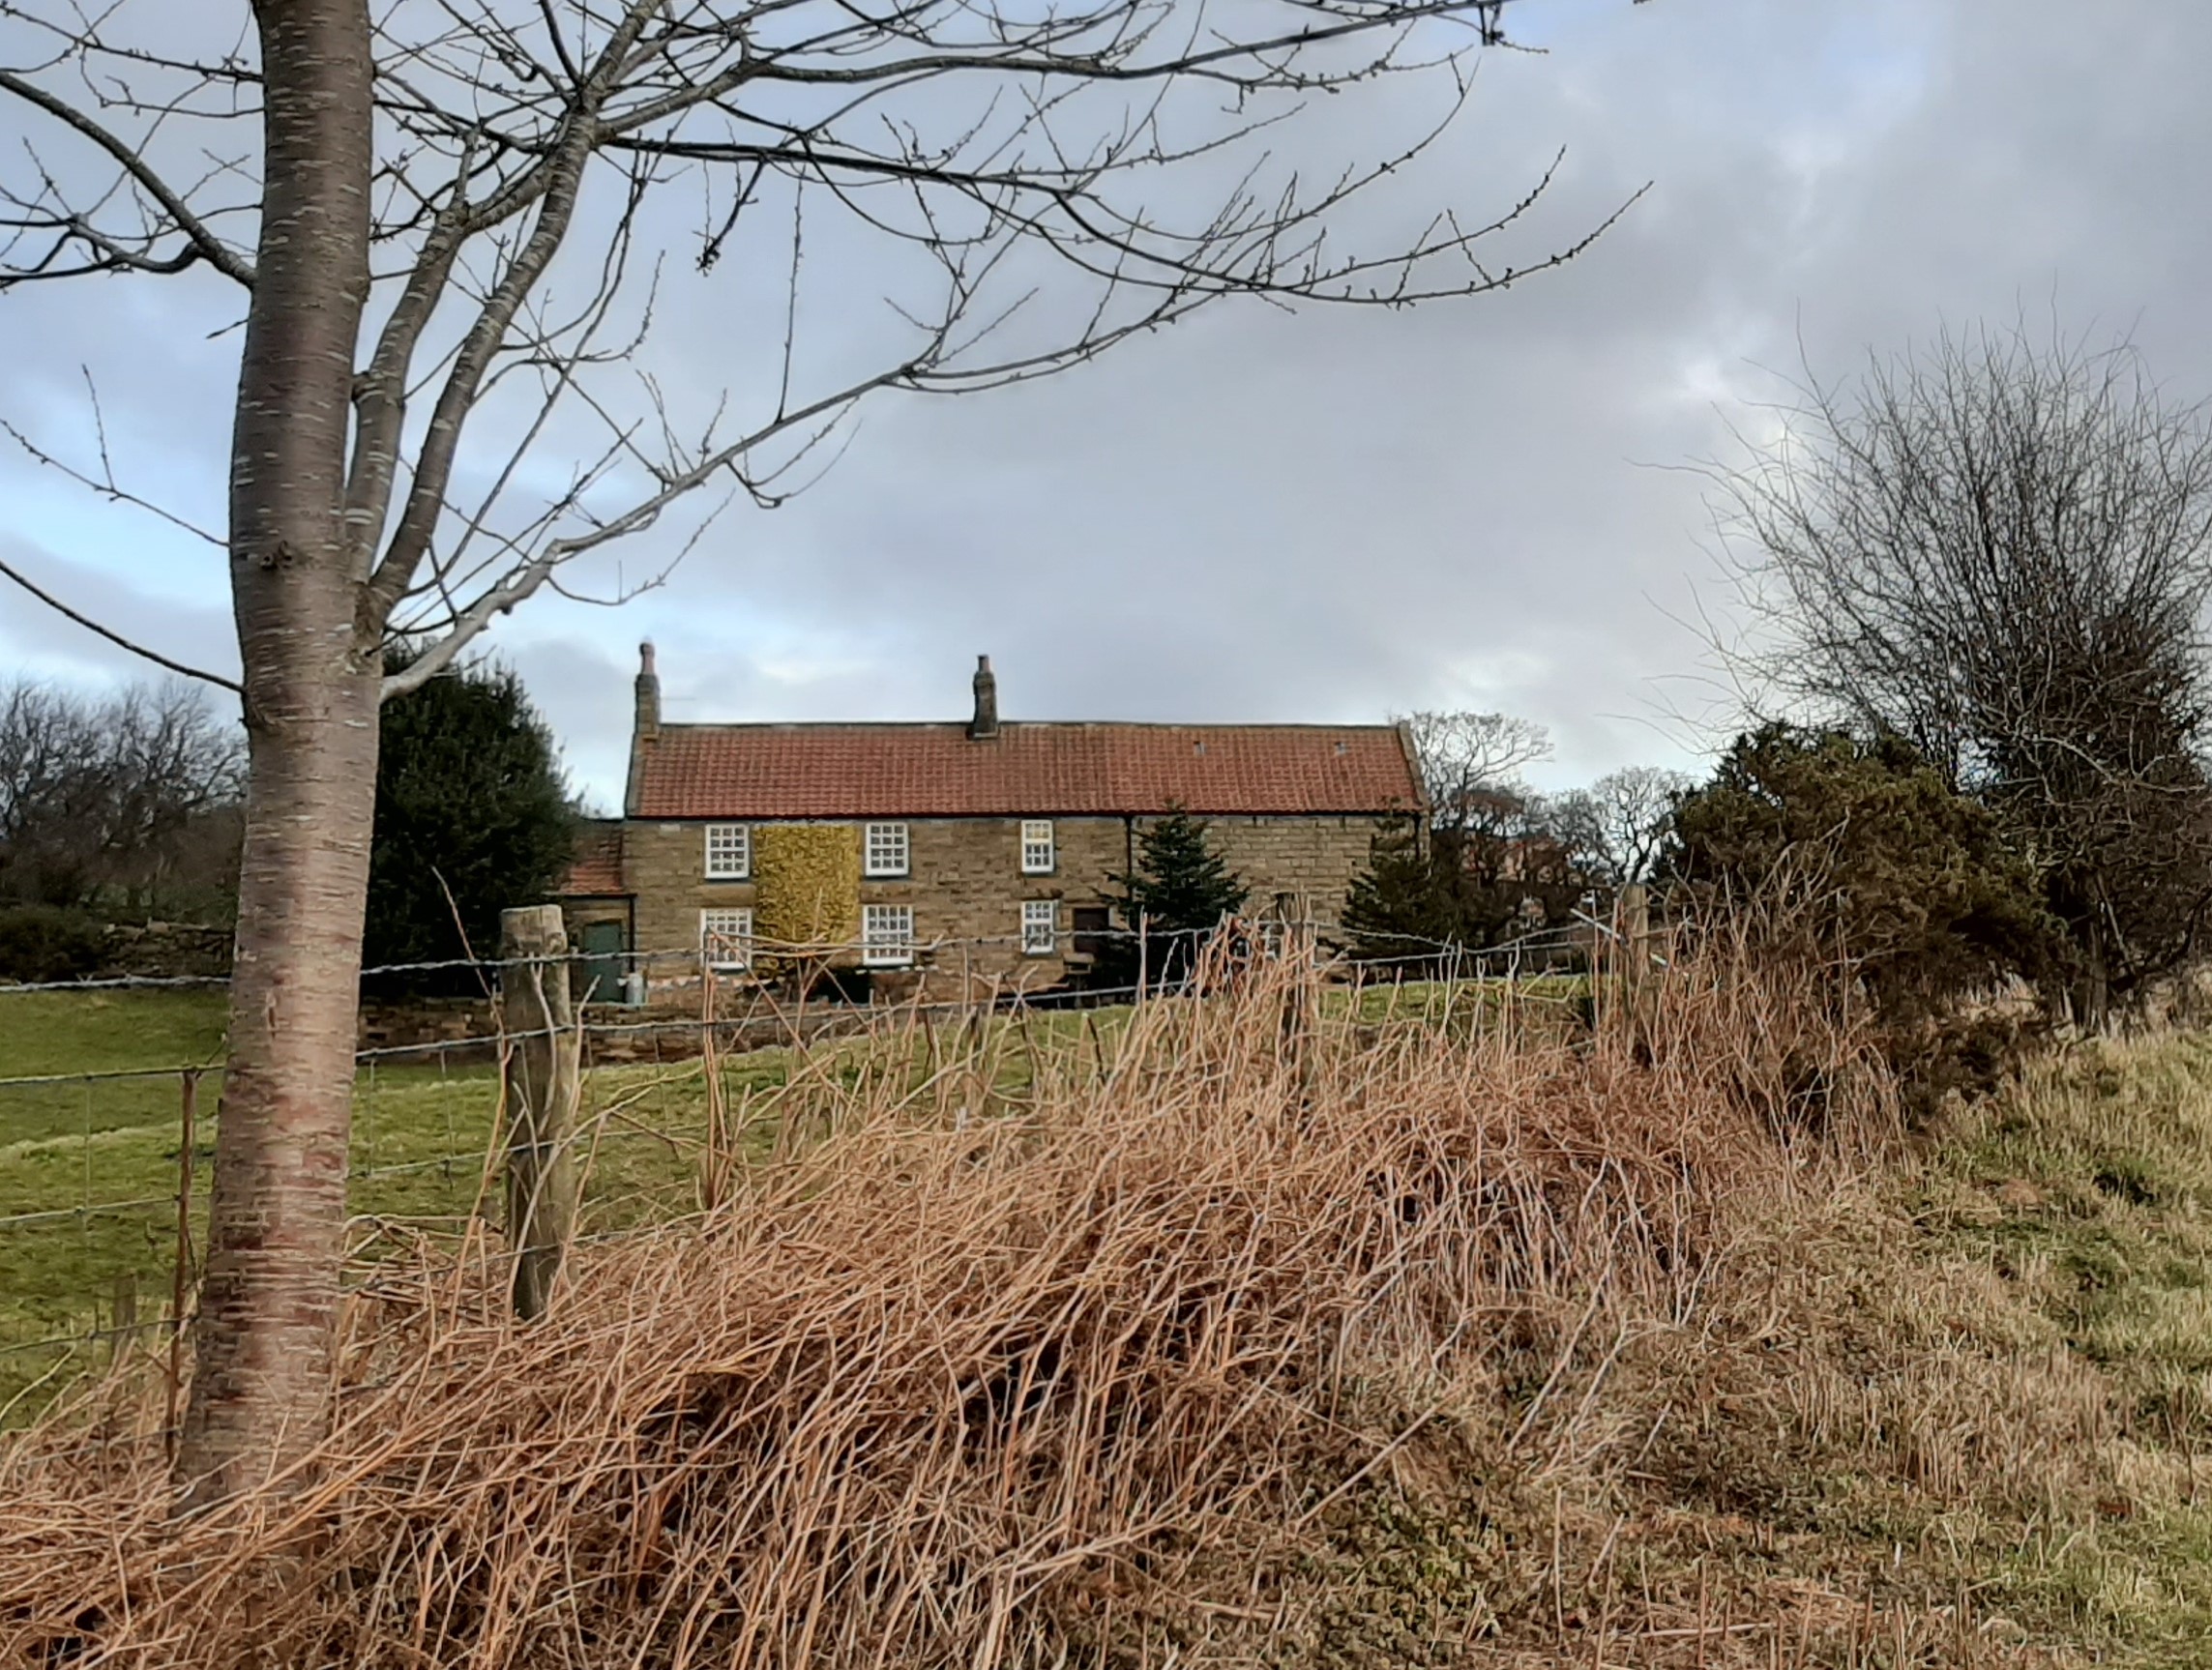 The farmhouse on the moors